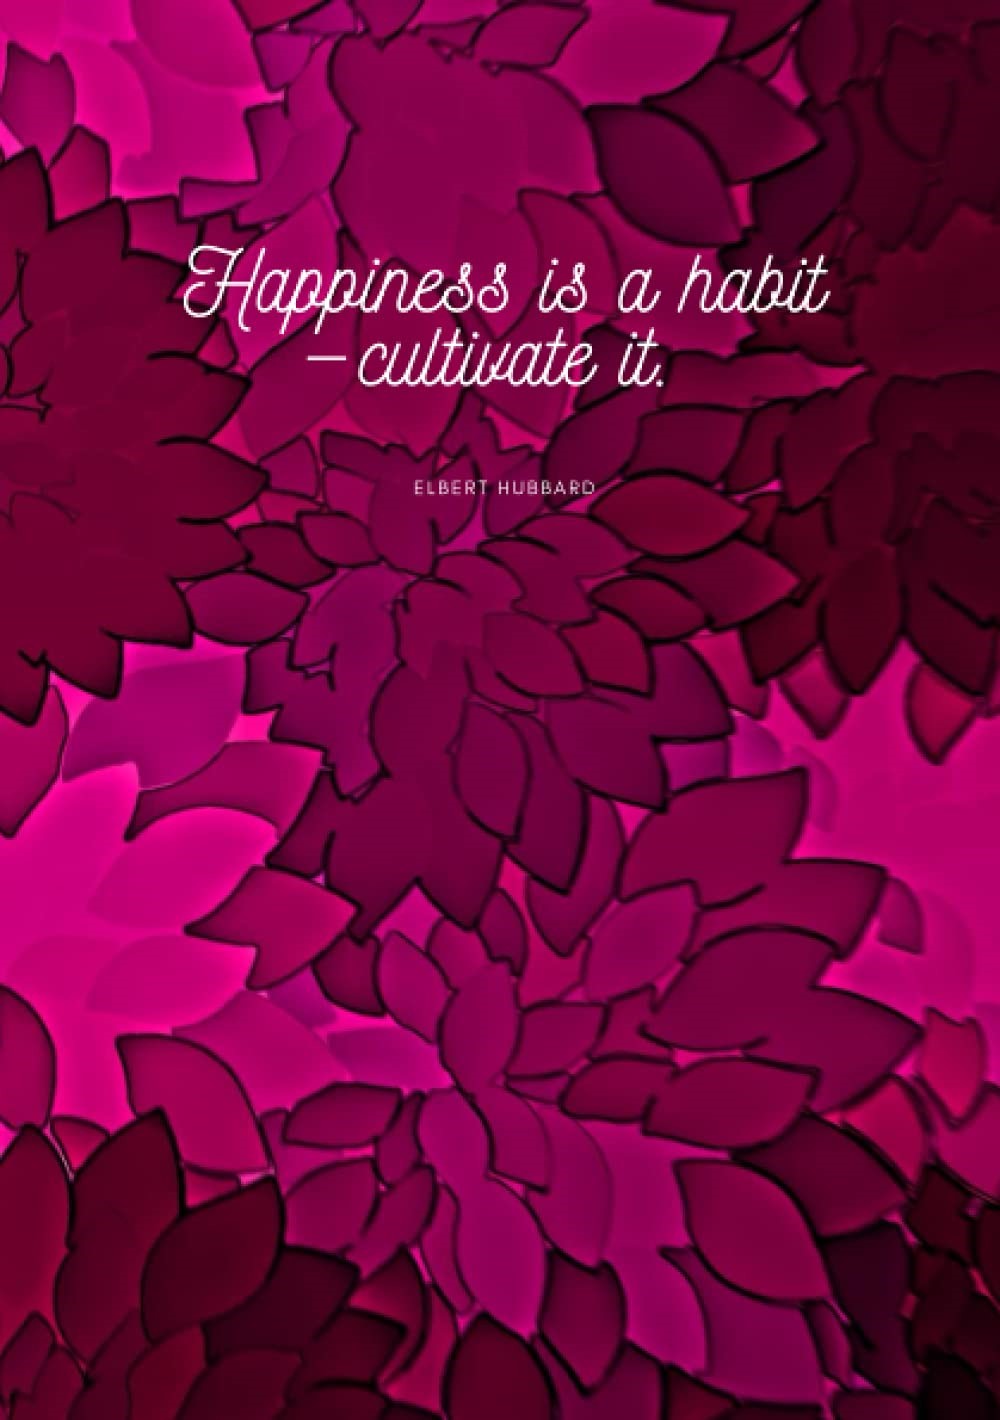 Les 21 habitudes des gens heureux par H Hubbard Respect, honnêteté, choix des amis, pardonner, aimer la vie...